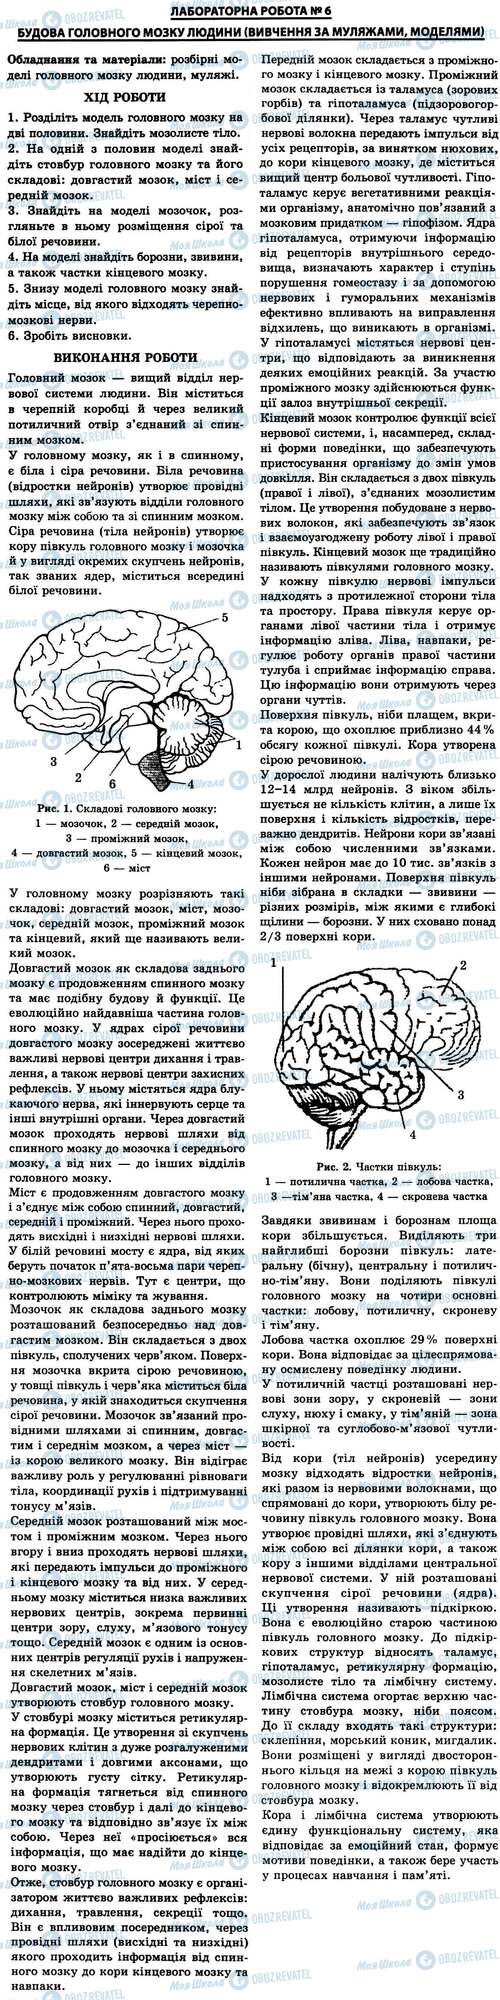 ГДЗ Биология 9 класс страница № 6. Будова головного мозку людини